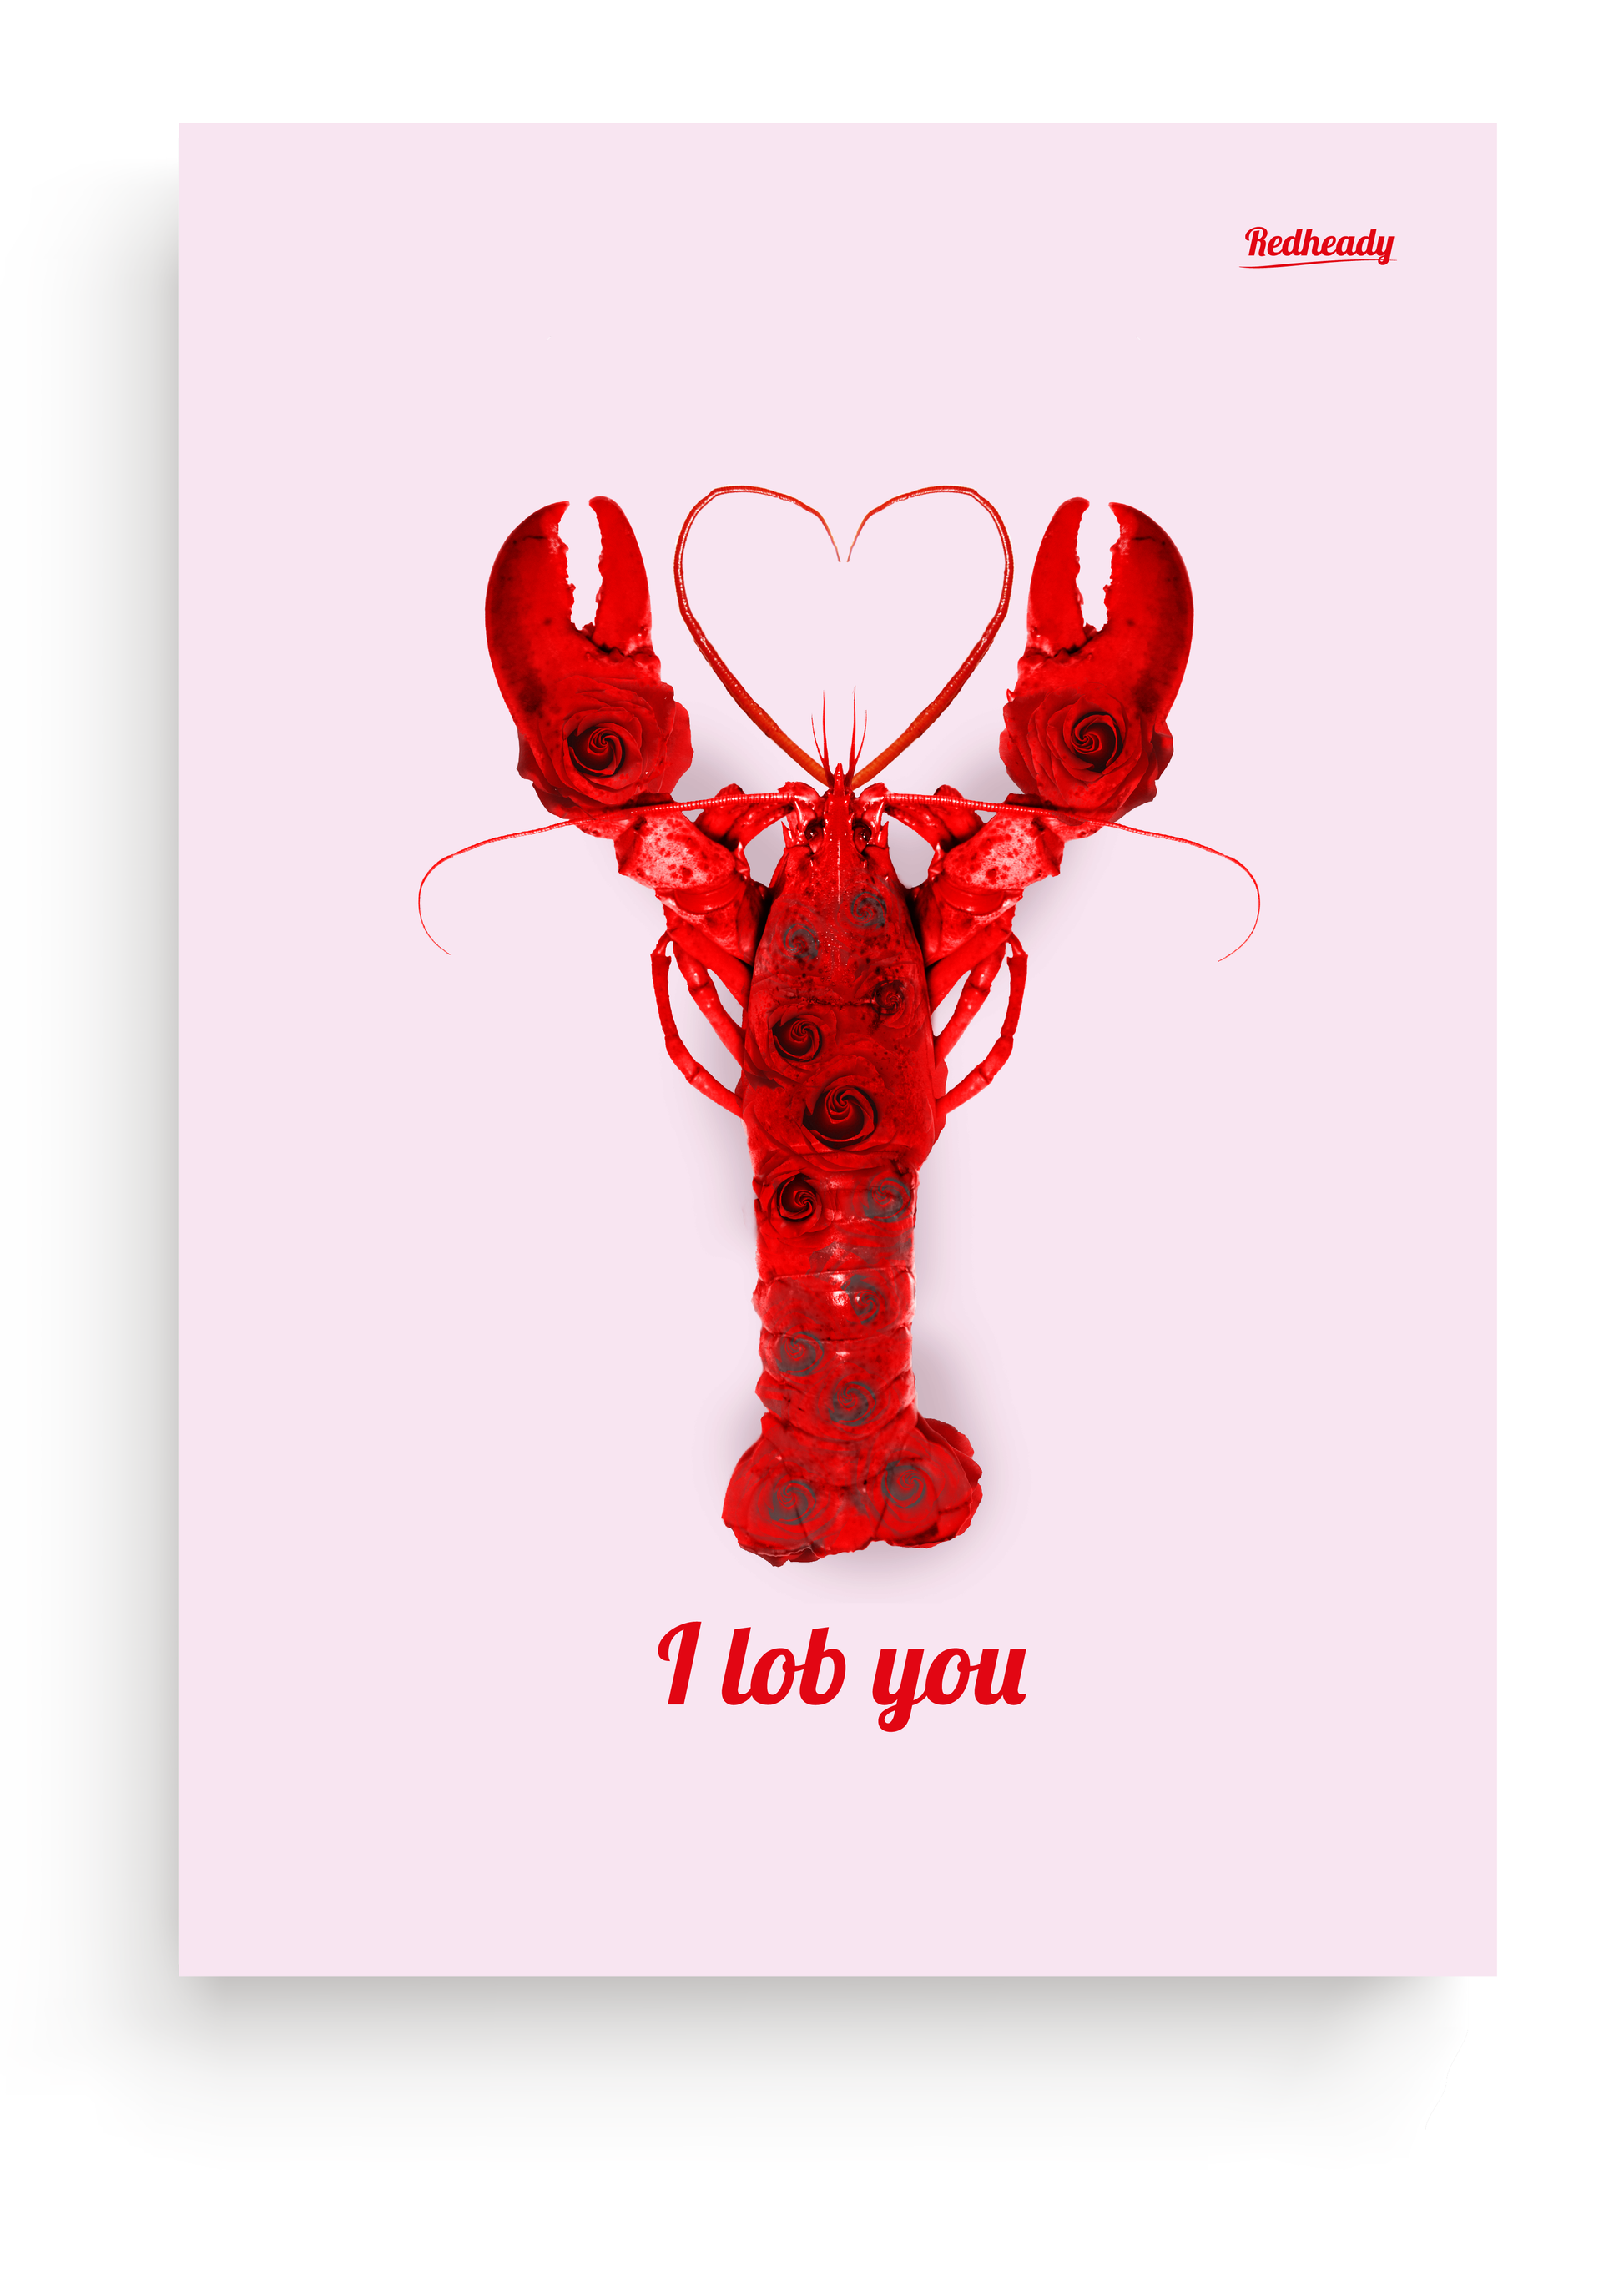 kreeft / lobster poster 